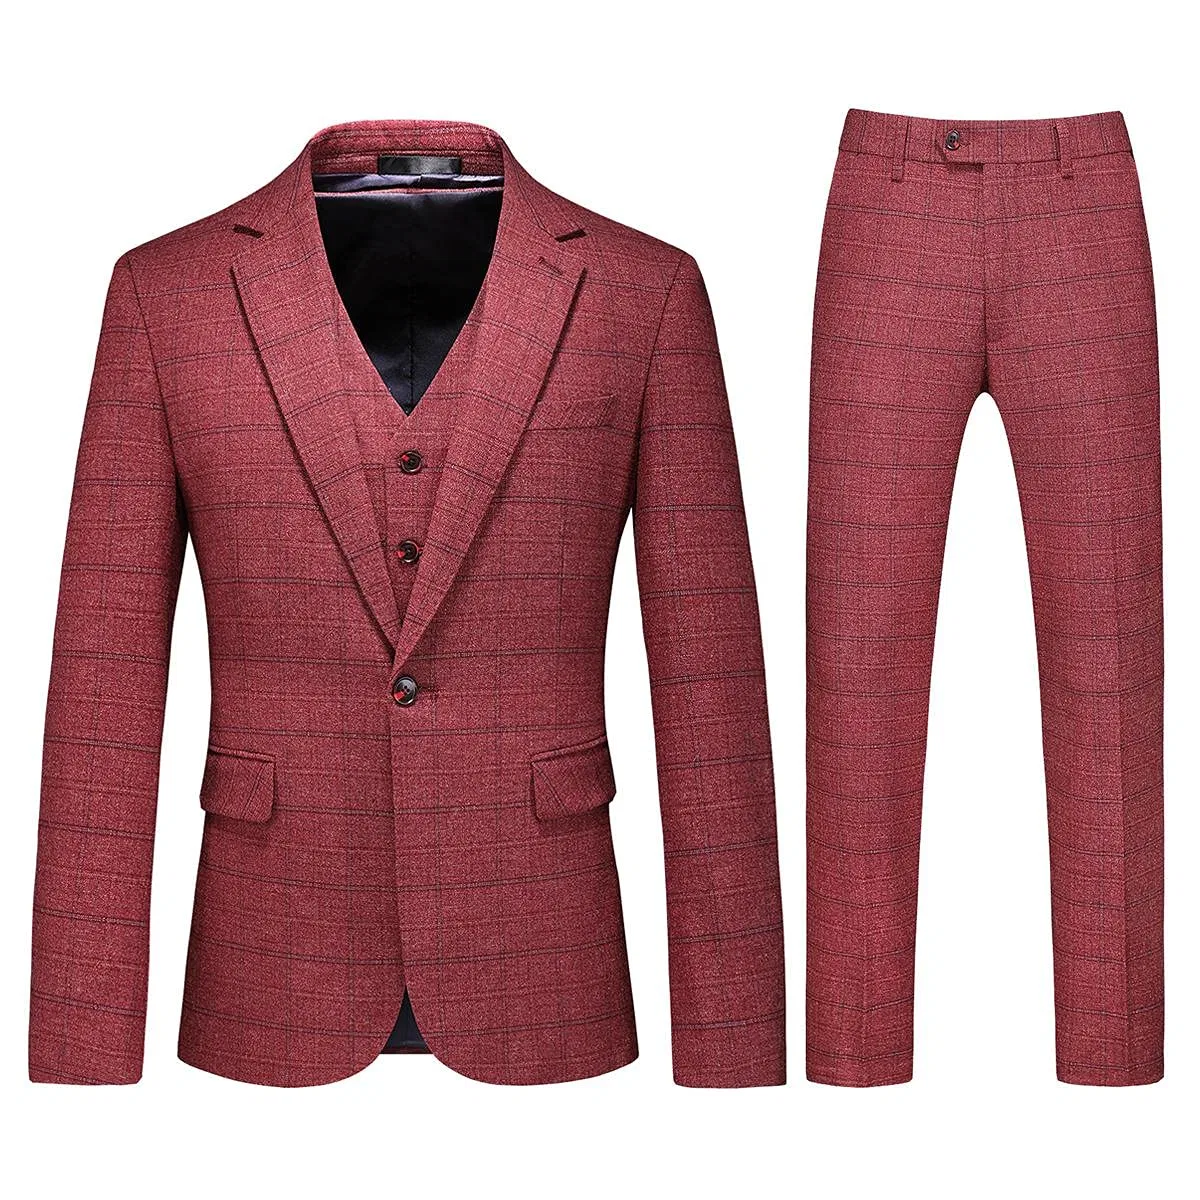 Herren 3-teiliger Anzug Slim Fit Plaid Tweed formelle Bekleidung